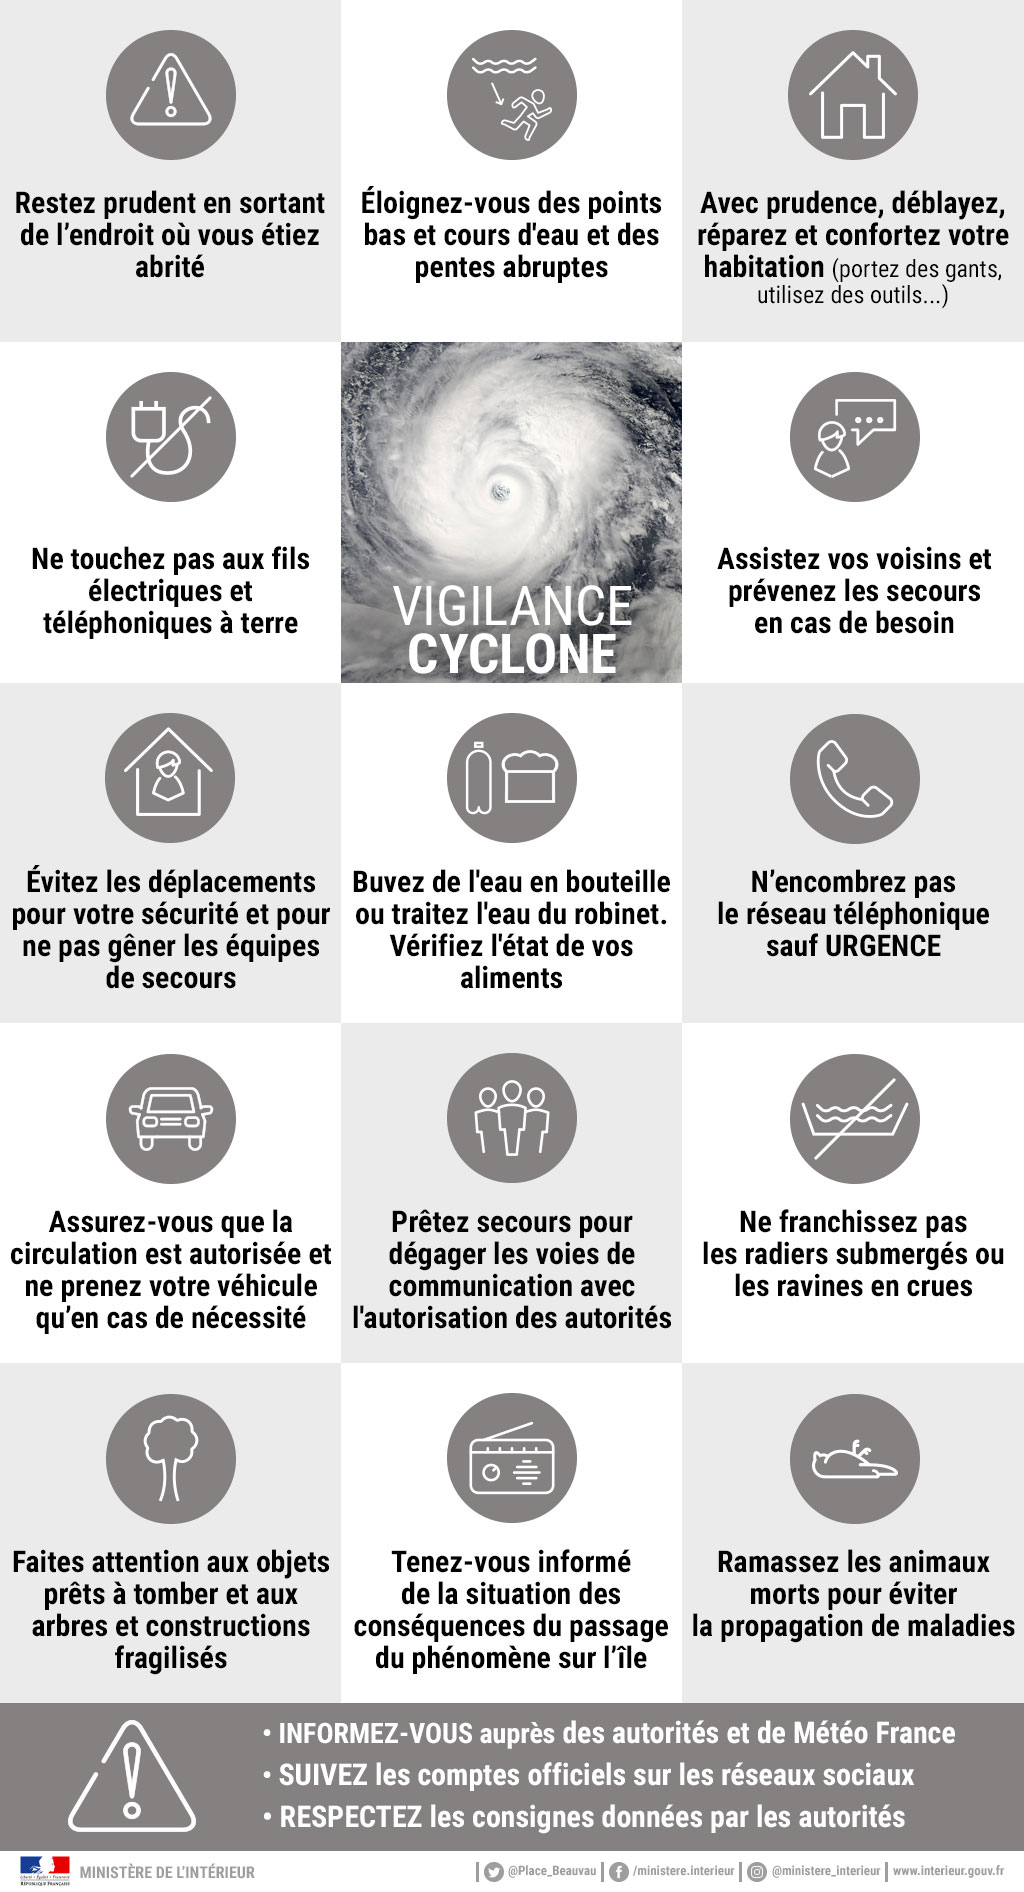 Cyclone : vigilance grise (nouveaux conseils)